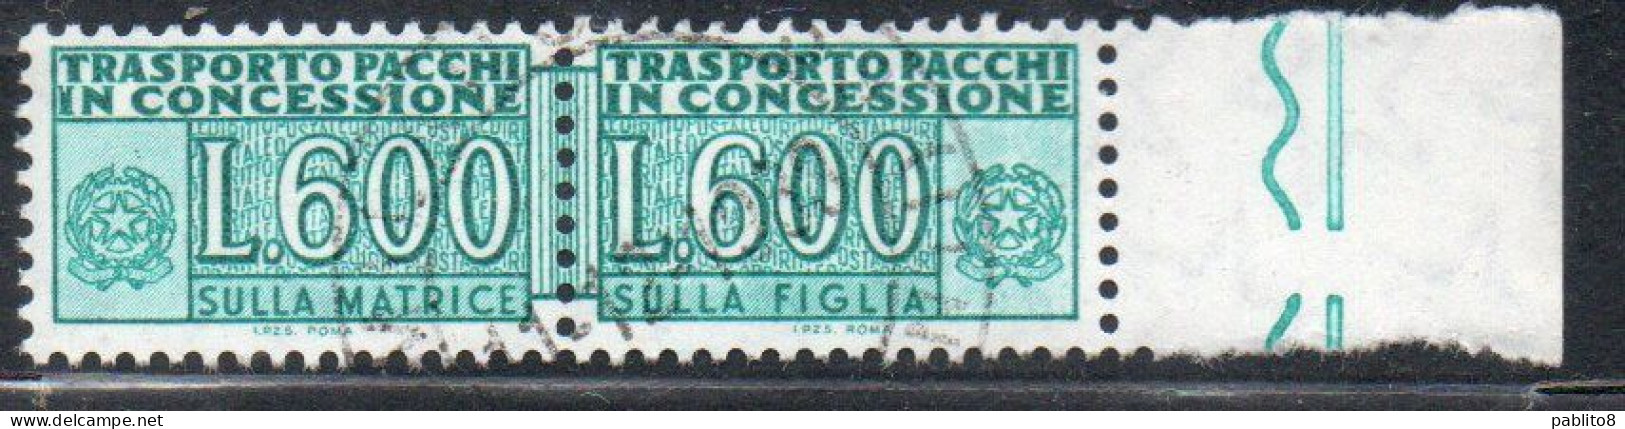 ITALIA REPUBBLICA ITALY REPUBLIC 1955 1981 PACCHI IN CONCESSIONE PARCEL POST STELLE STARS 1979 LIRE 600 USATO USED OBLIT - Colis-concession